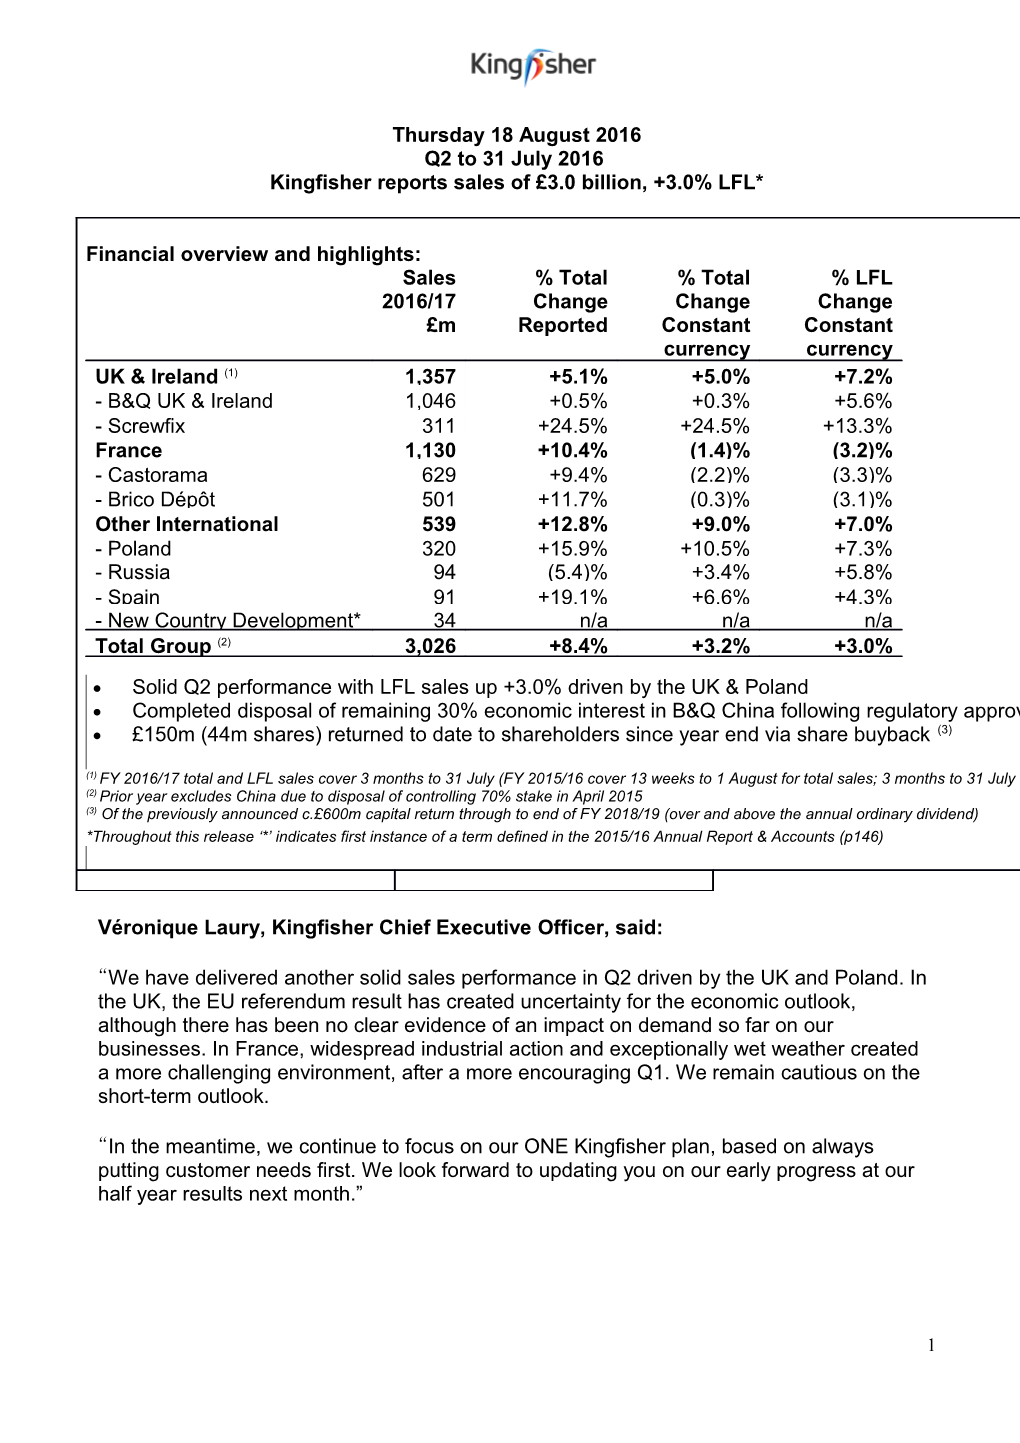 Kingfisher Reports Sales of 3.0 Billion, +3.0% LFL*